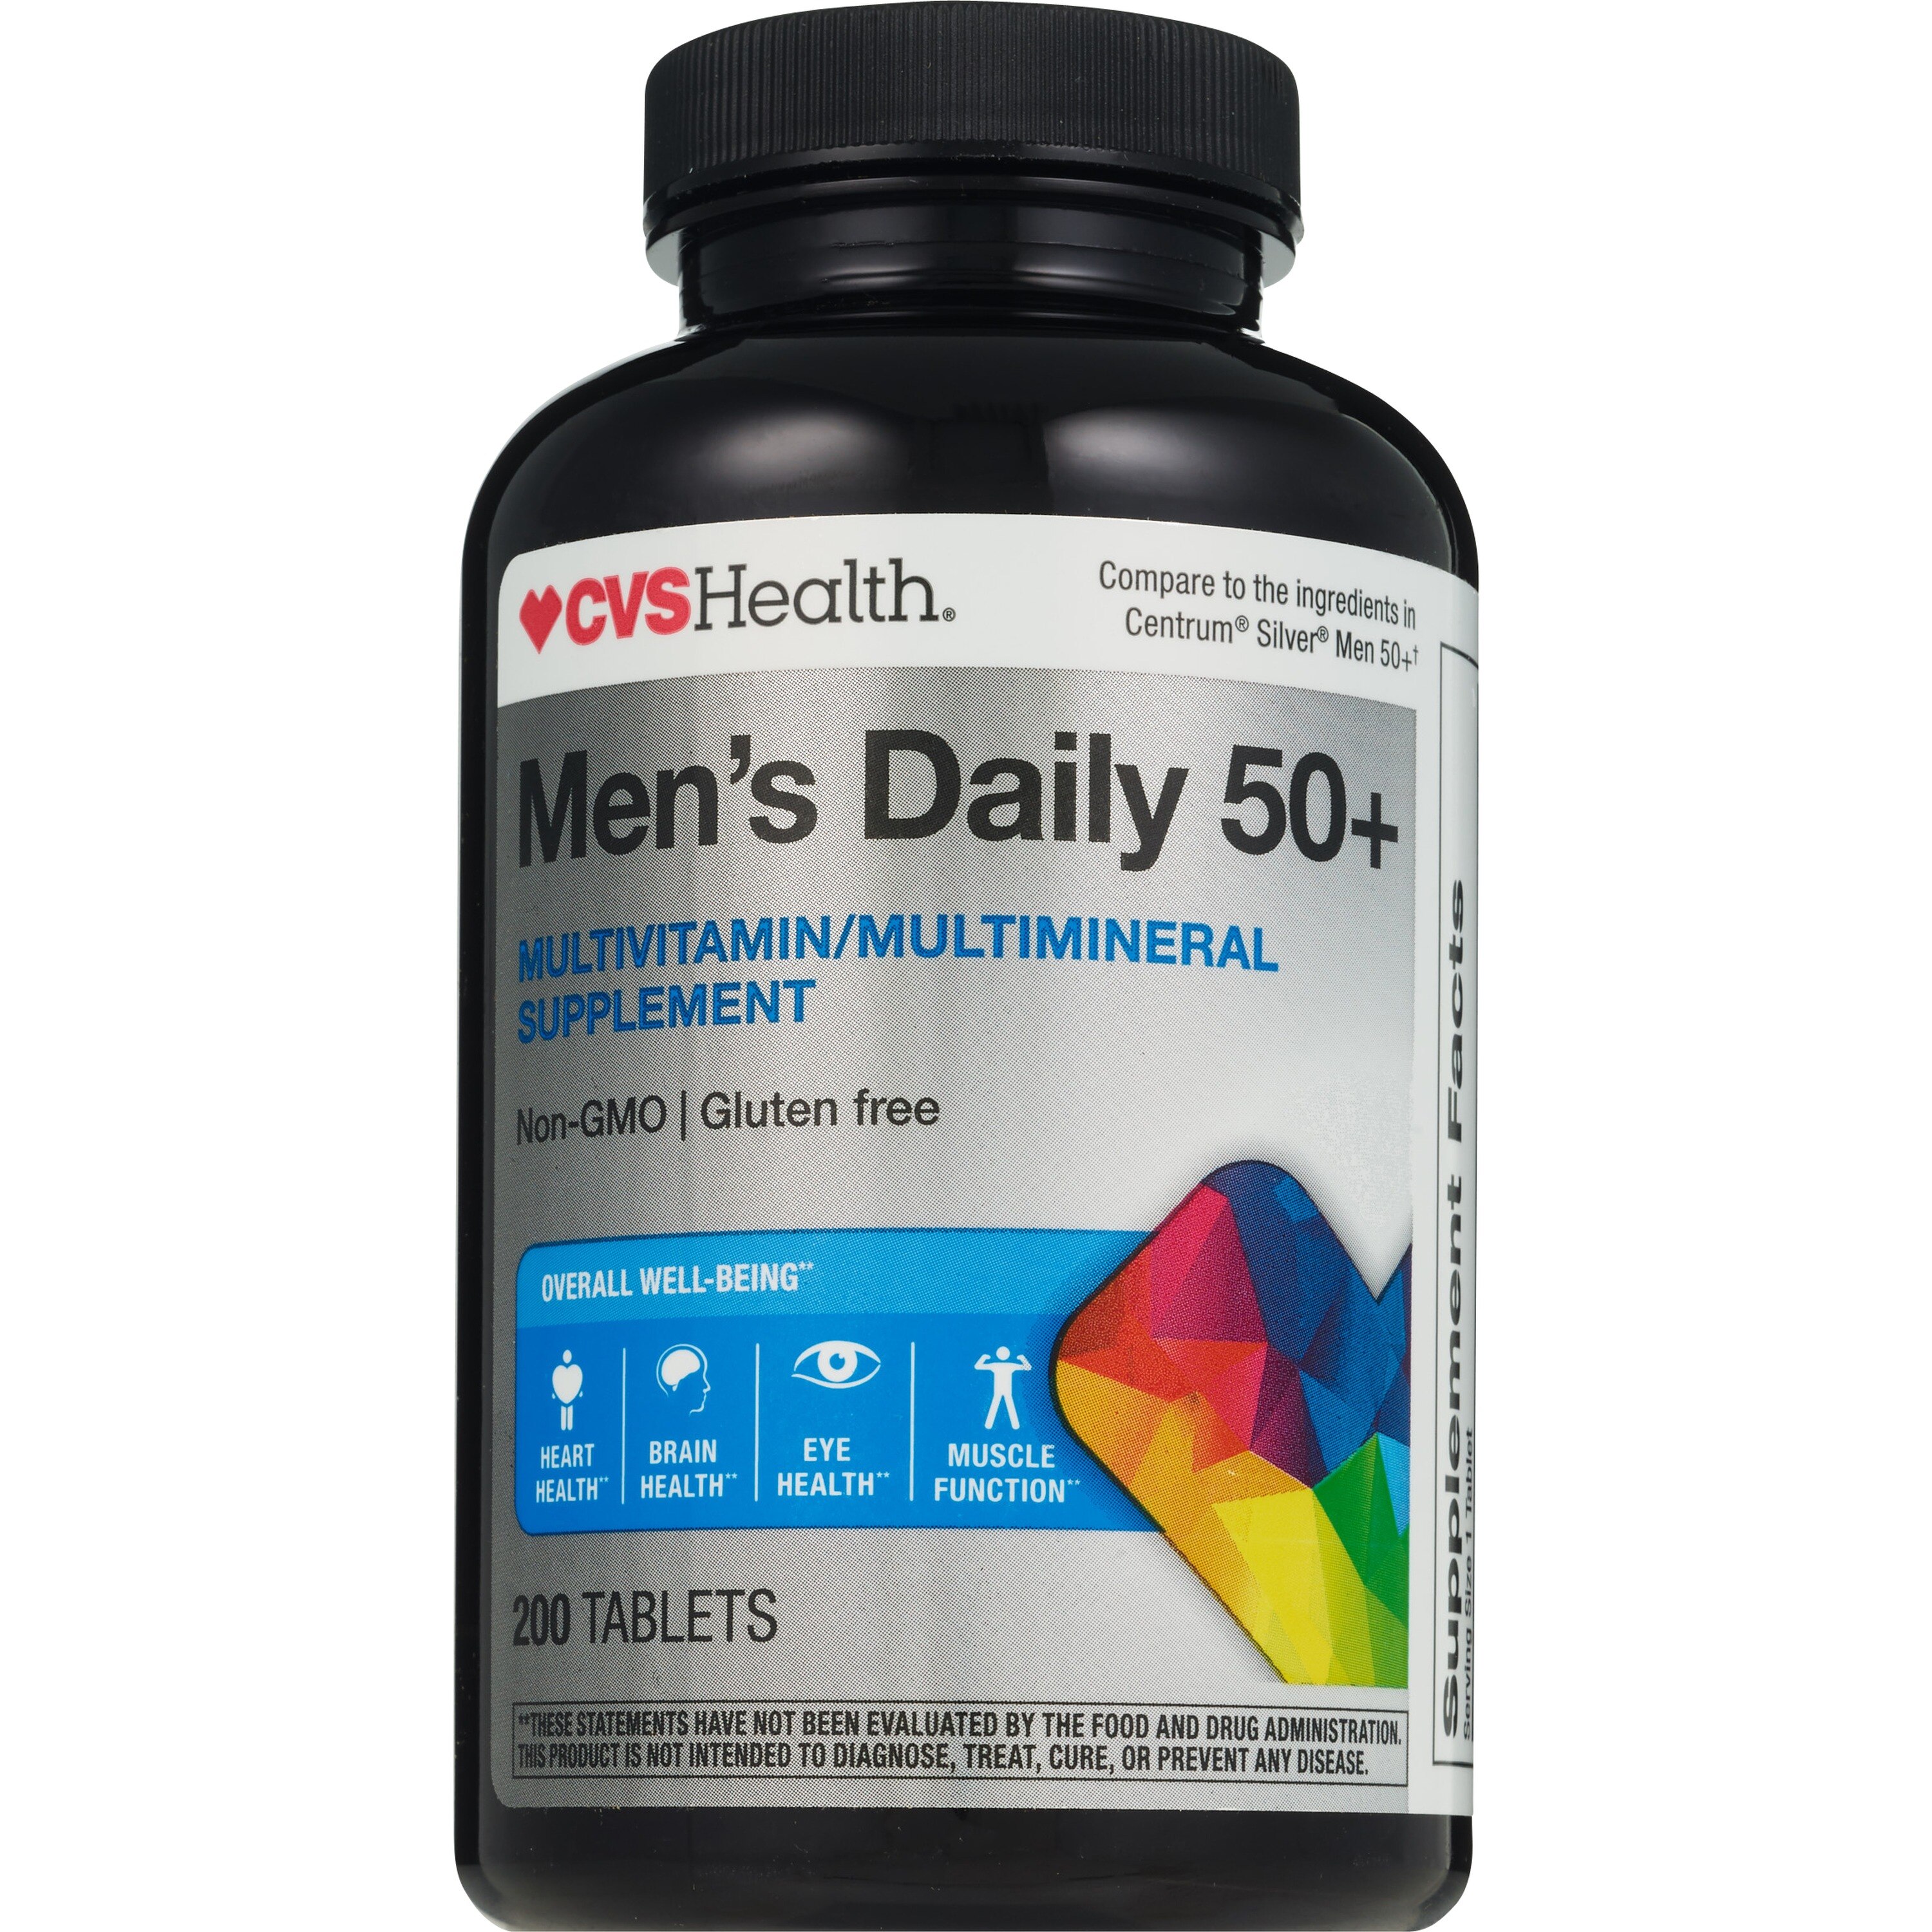 CVS Health Spectravite Ultra - Tabletas de multivitaminas para la salud de hombres mayores